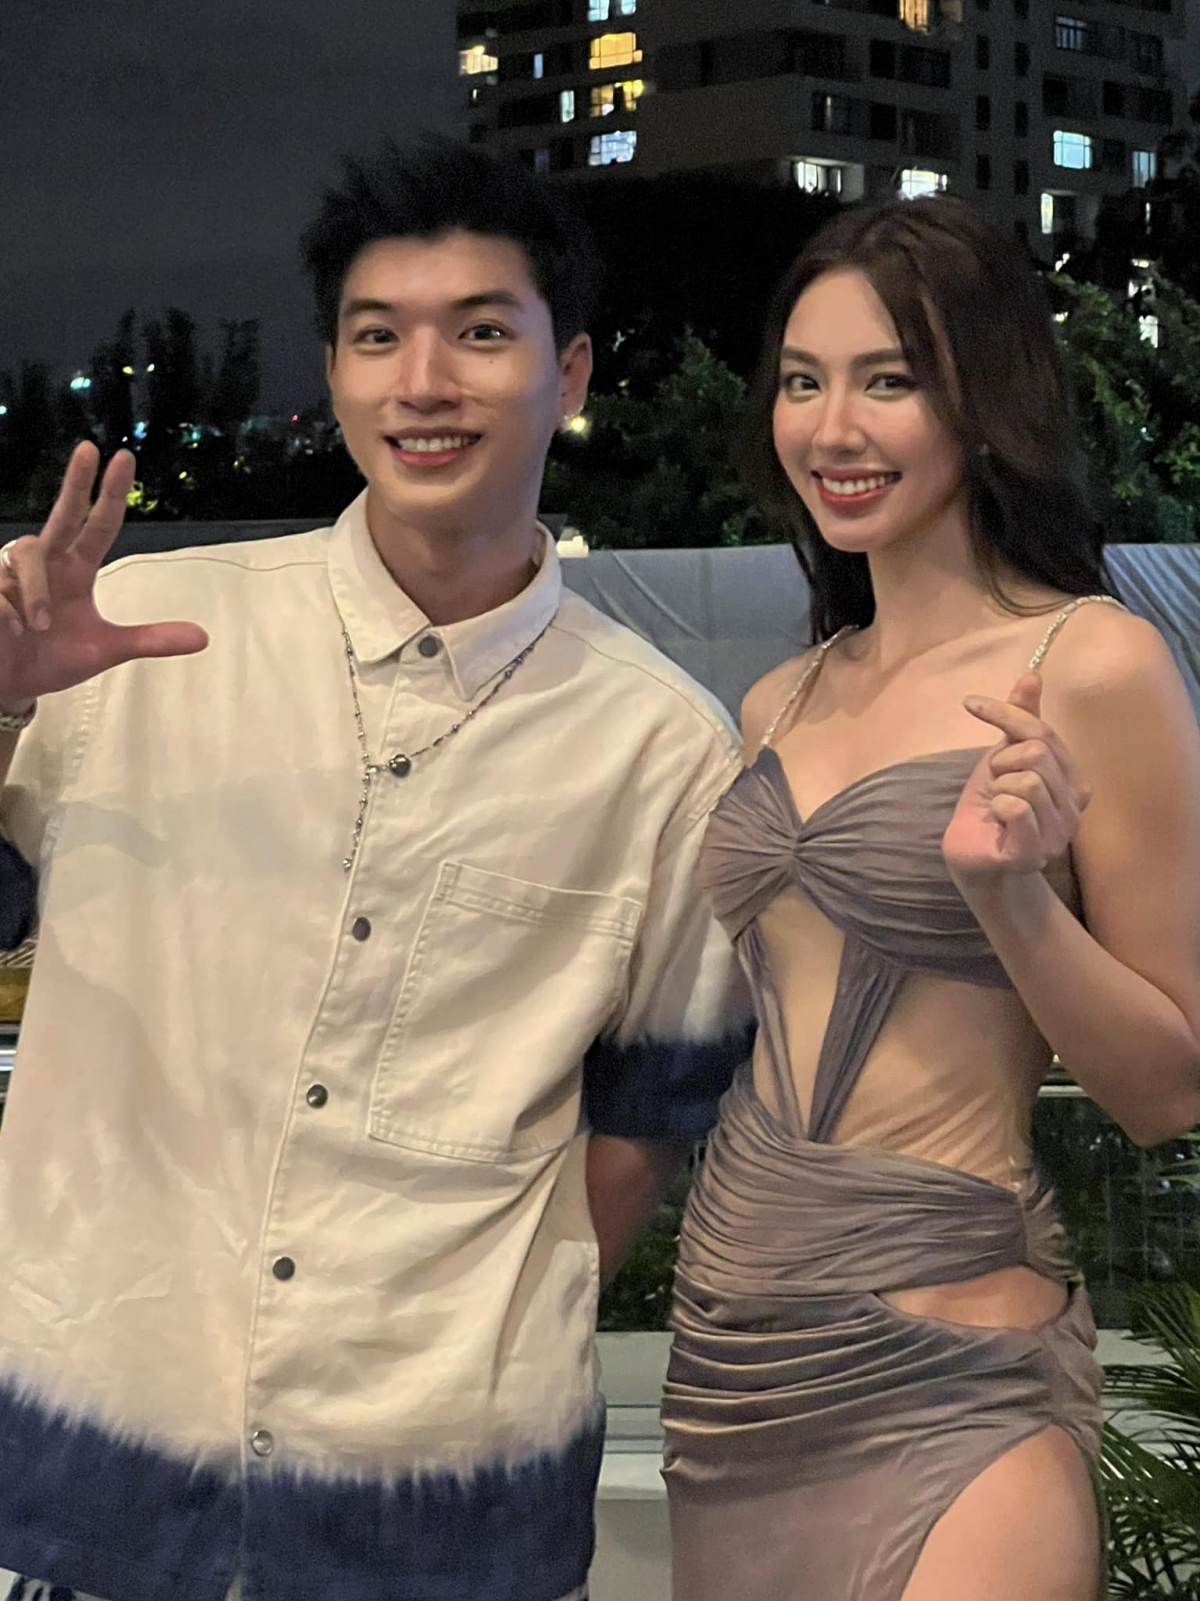 Hoa hậu Thùy Tiên tuyên bố ‘có thể lấy vợ’ tại buổi họp fans khiến netizen xôn xao